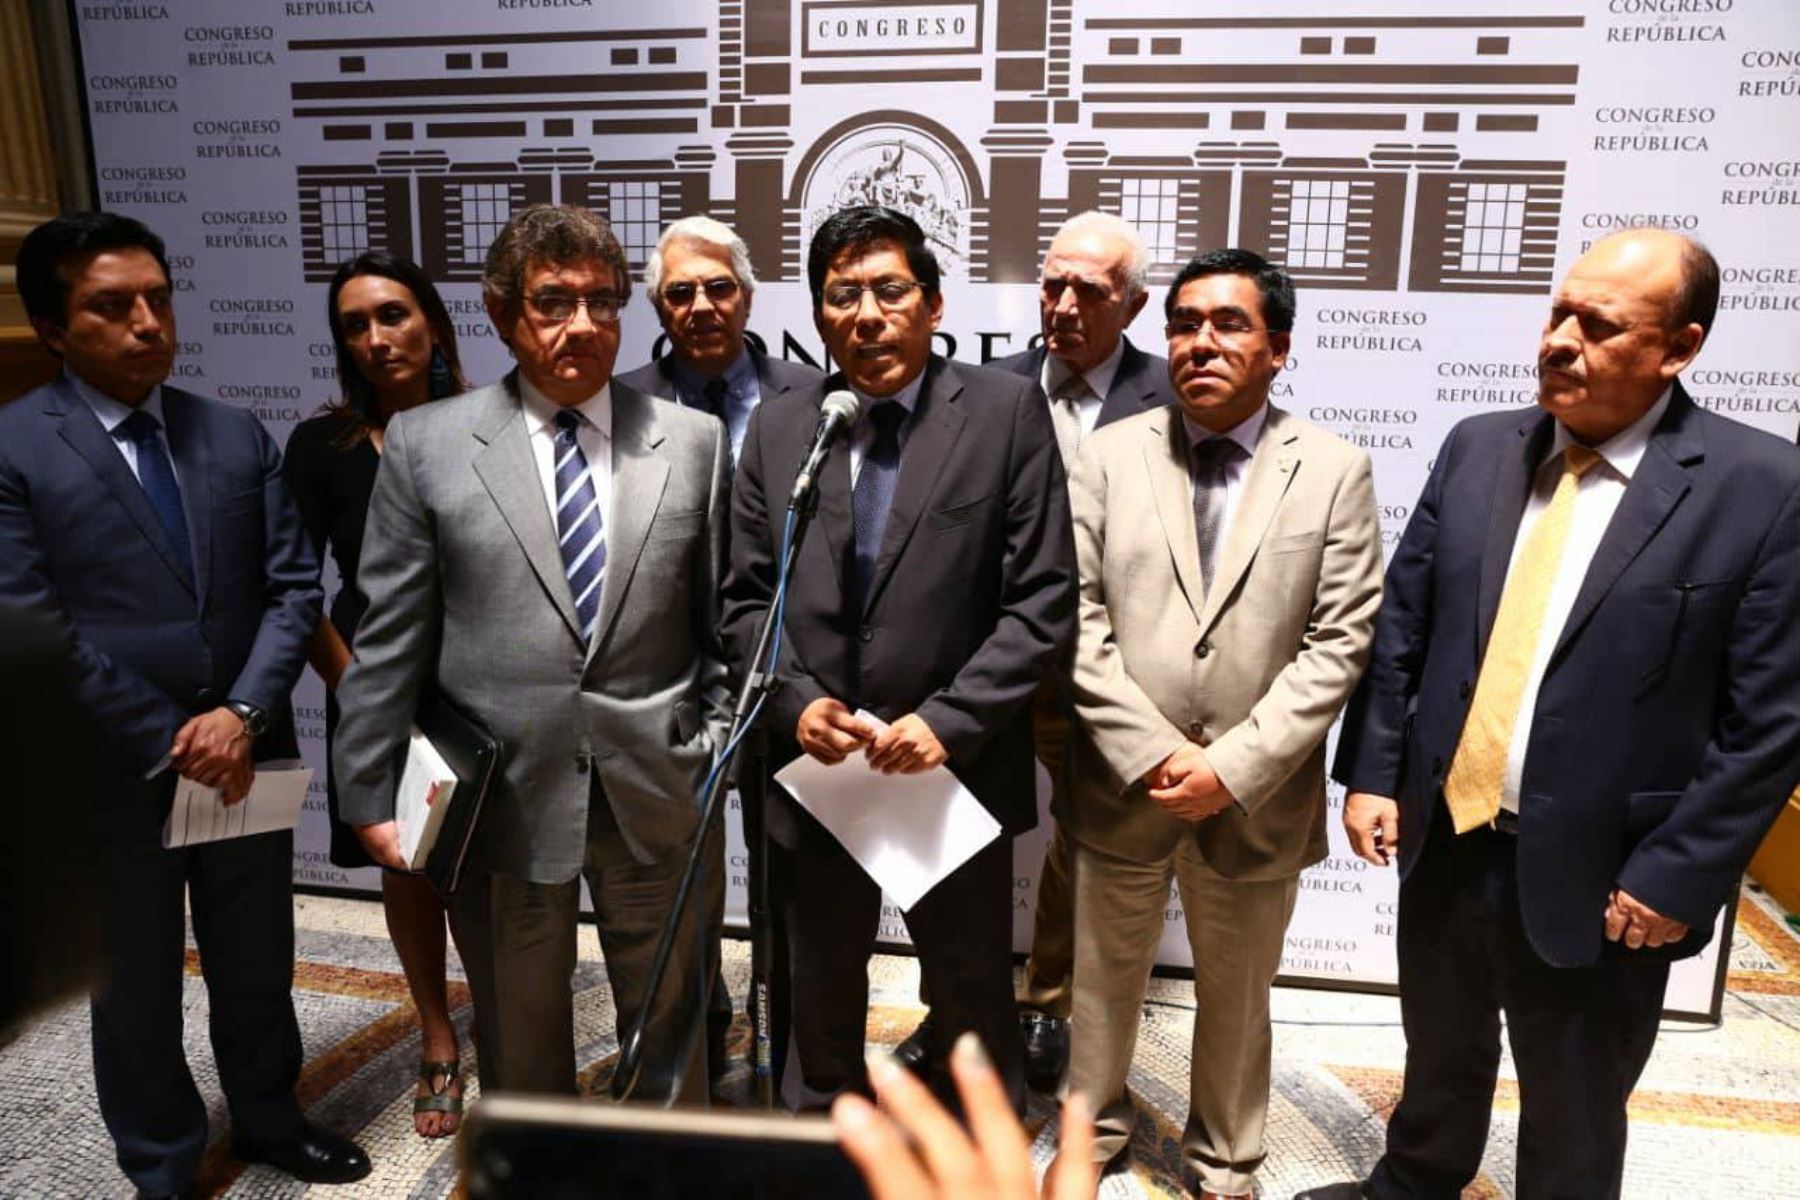 La bancada oficialista Peruanos por el Kambio (PPK) anunció hoy la renuncia de su congresista Alberto Oliva a la Comisión de Ética. Foto: ANDINA/ Congreso